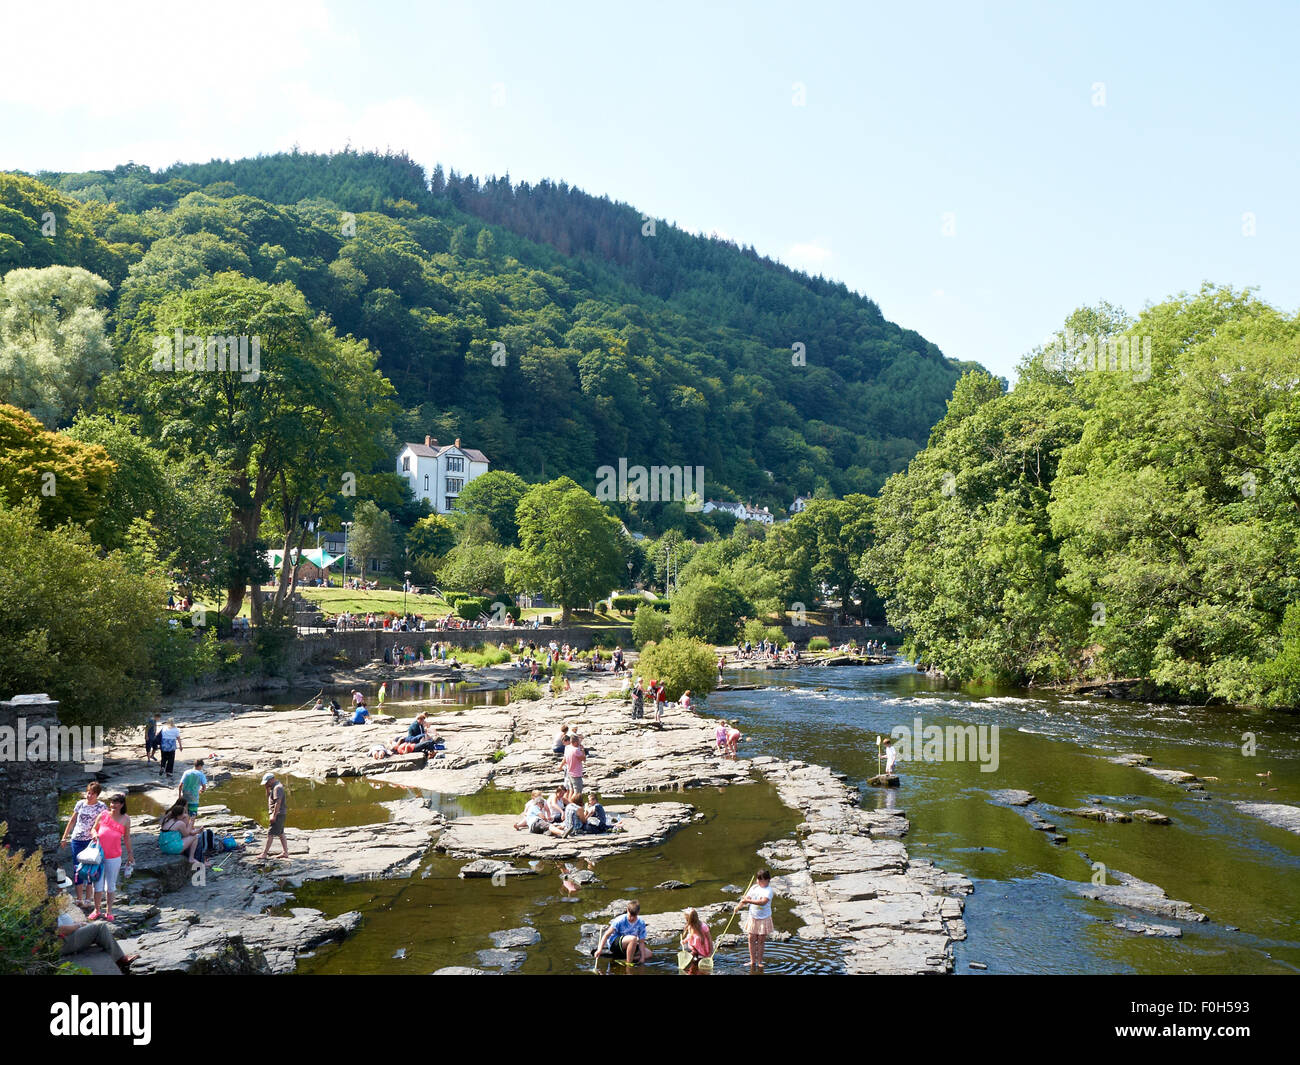 Natation dans la rivière Dee à Llangollen Denbighshire pays de Galles Royaume-Uni Banque D'Images